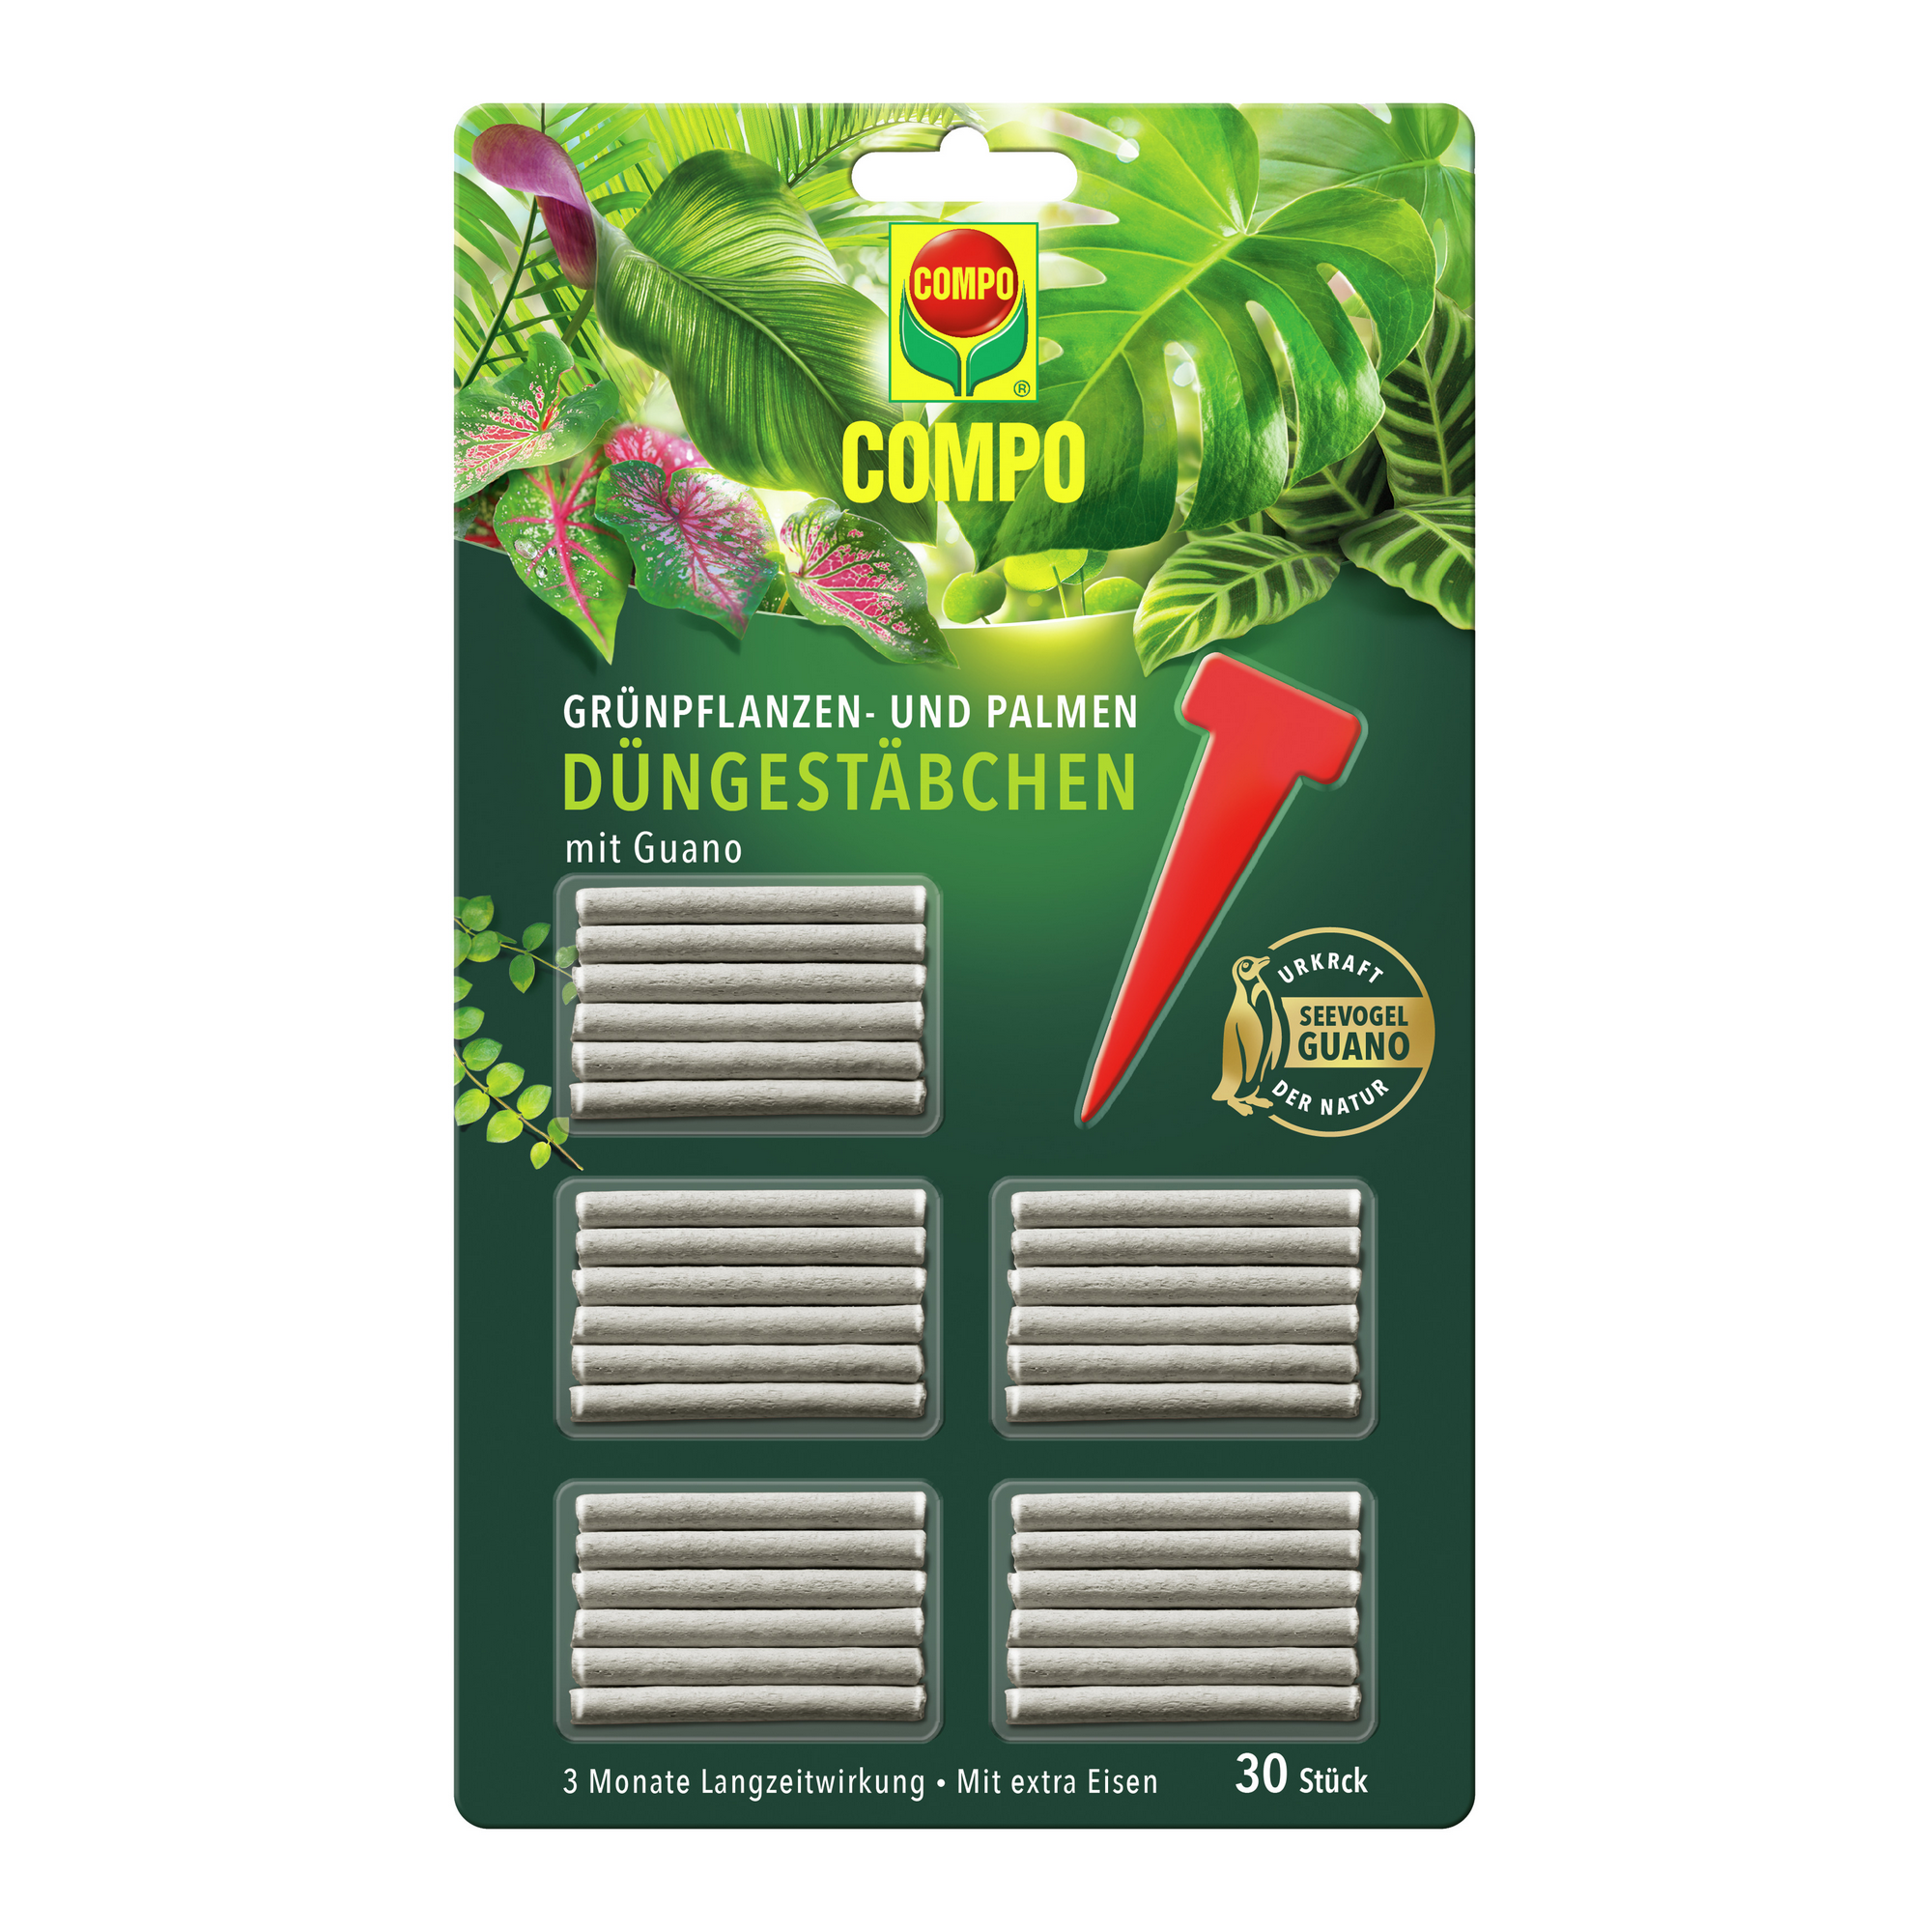 Compo Grünpflanzen- und Palmen-Düngestäbchen mit Guano 30 Stück